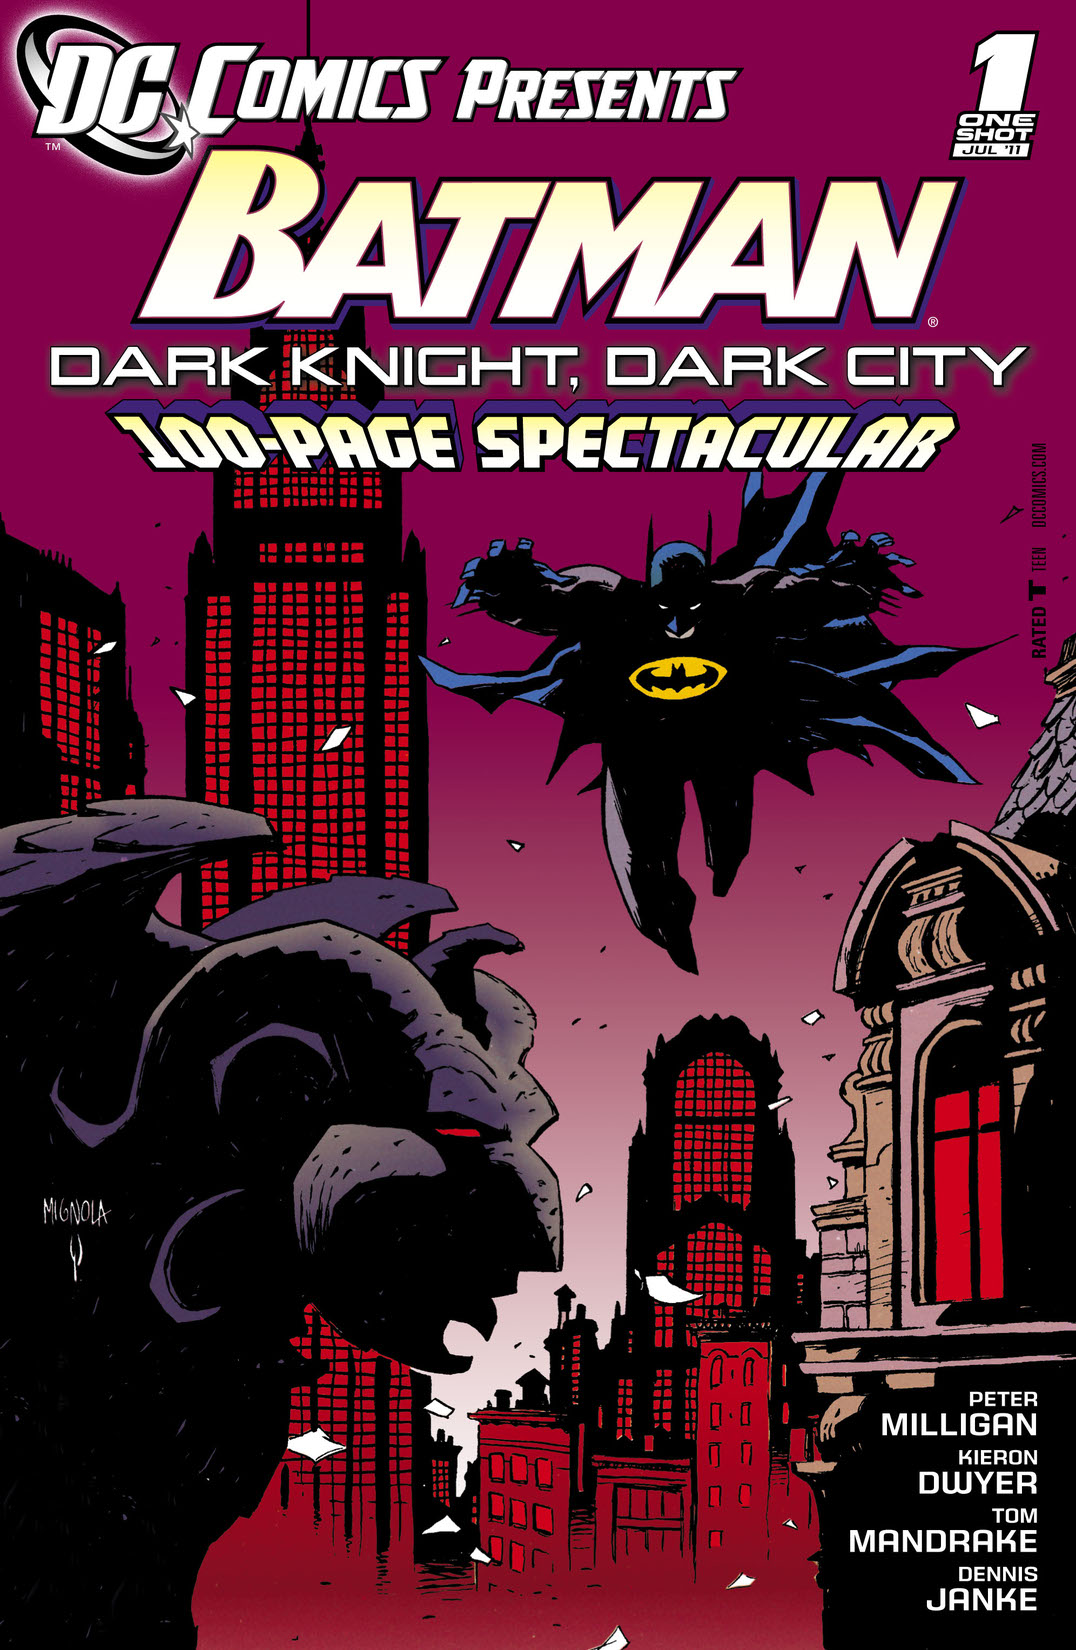 DC Comics Presents: Batman: Dark Knight, Dark City (2011-) #1 preview images